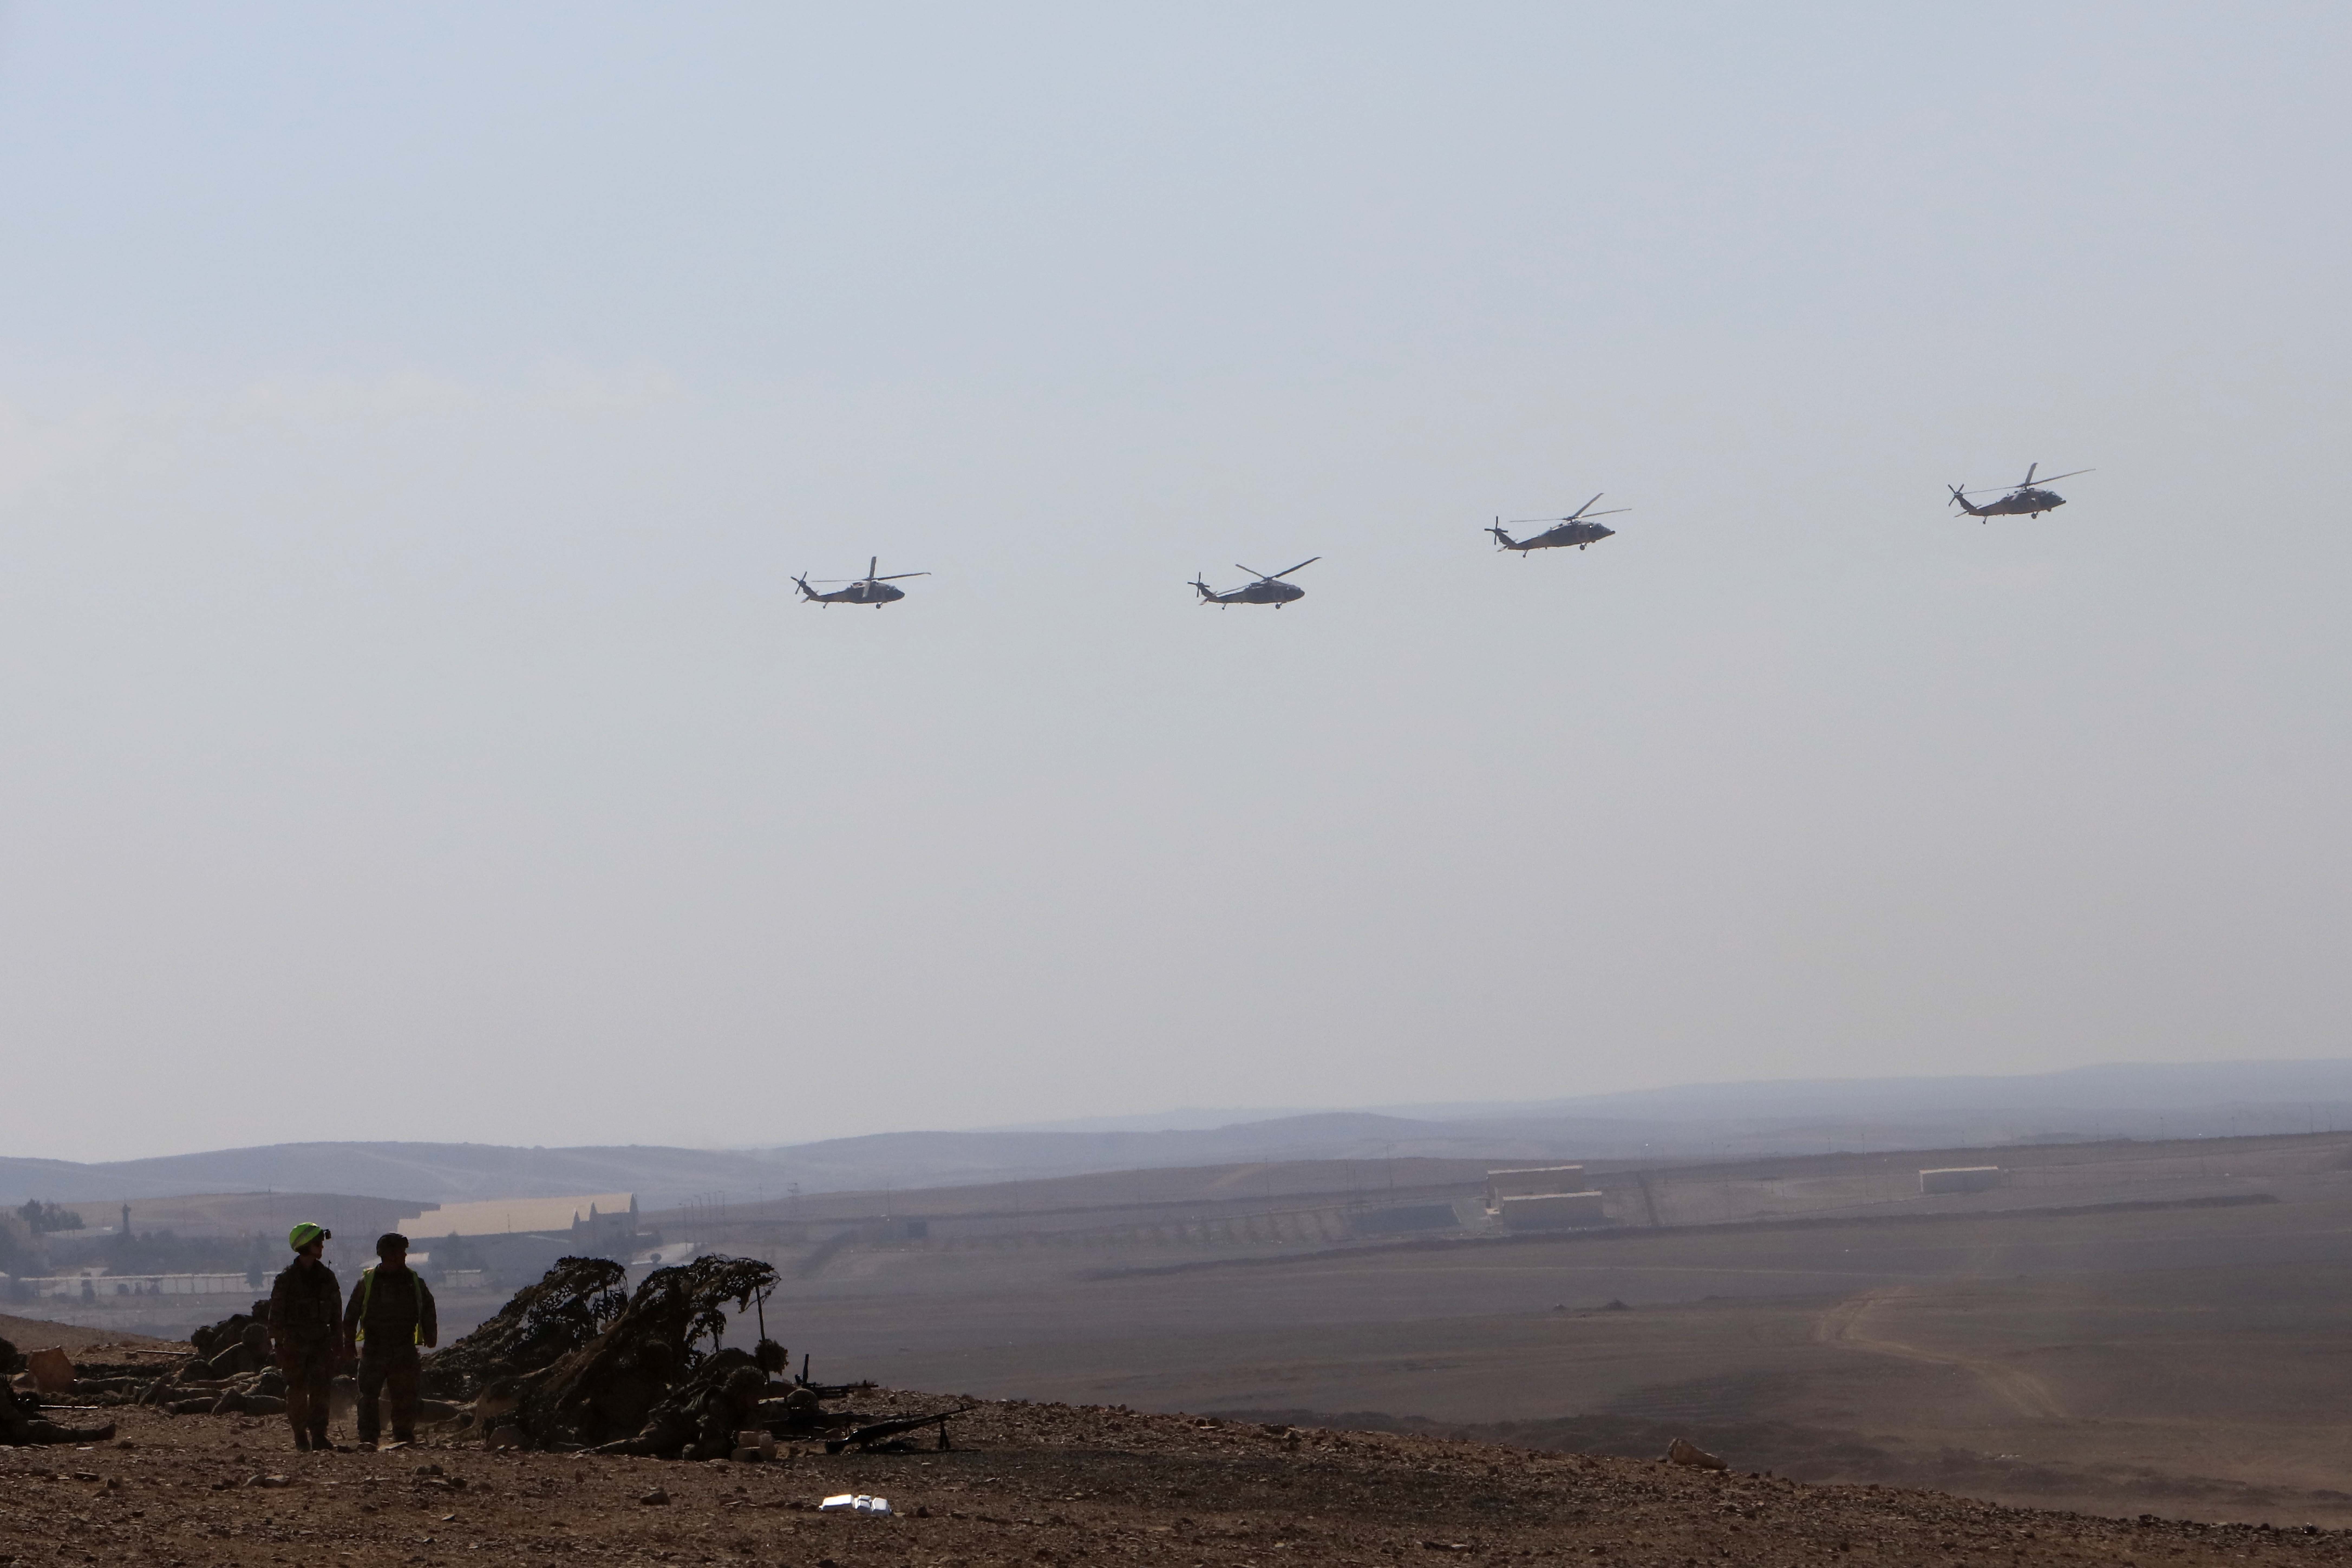 ZARQA, Sejumlah helikopter dan personel darat berpartisipasi dalam latihan gabungan bersandi Eager Lion di dekat Kota Zarqa, Yordania, pada 14 September 2022. Latihan gabungan tahunan bersandi Eager Lion yang diadakan oleh Angkatan Bersenjata Yordania mulai digelar pada Minggu (11/9) di negara kerajaan tersebut dengan partisipasi 26 pasukan militer asing. Lebih dari 4.000 personel militer dan 1.000 warga sipil berpartisipasi dalam latihan yang diadakan hingga 15 September itu, lapor stasiun televisi milik pemerintah Al-Mamlaka TV, melansir pernyataan Mustafa Al-Hiyari, juru bicara latihan militer tersebut. (Xinhua/Mohammad Abu Ghosh)